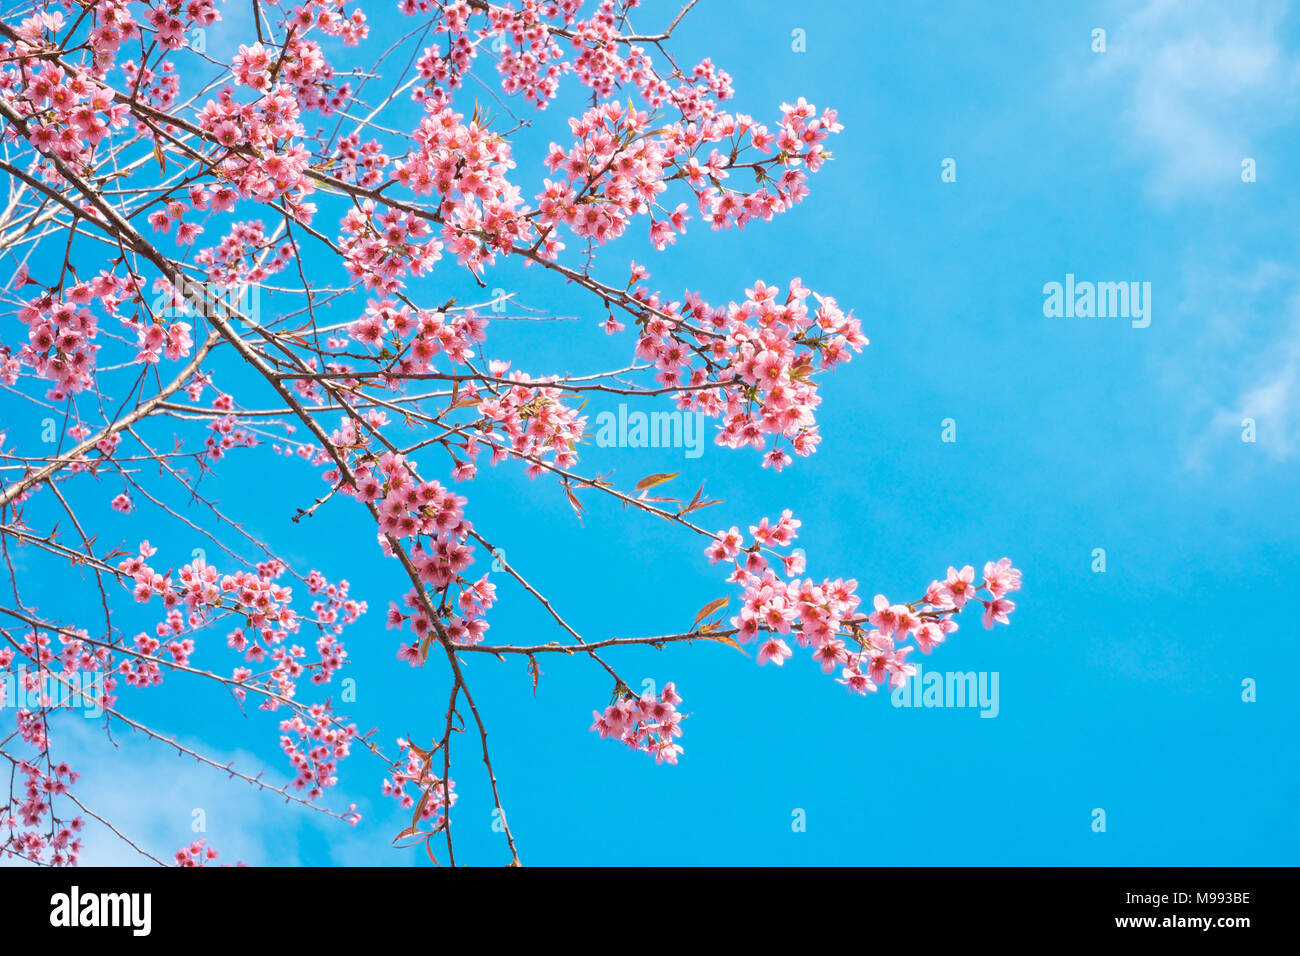 Image libre de haute qualité image fleur de cerisier sakura (Prunus, Cesacoides Wild Cherry) au printemps de l'himalaya Banque D'Images